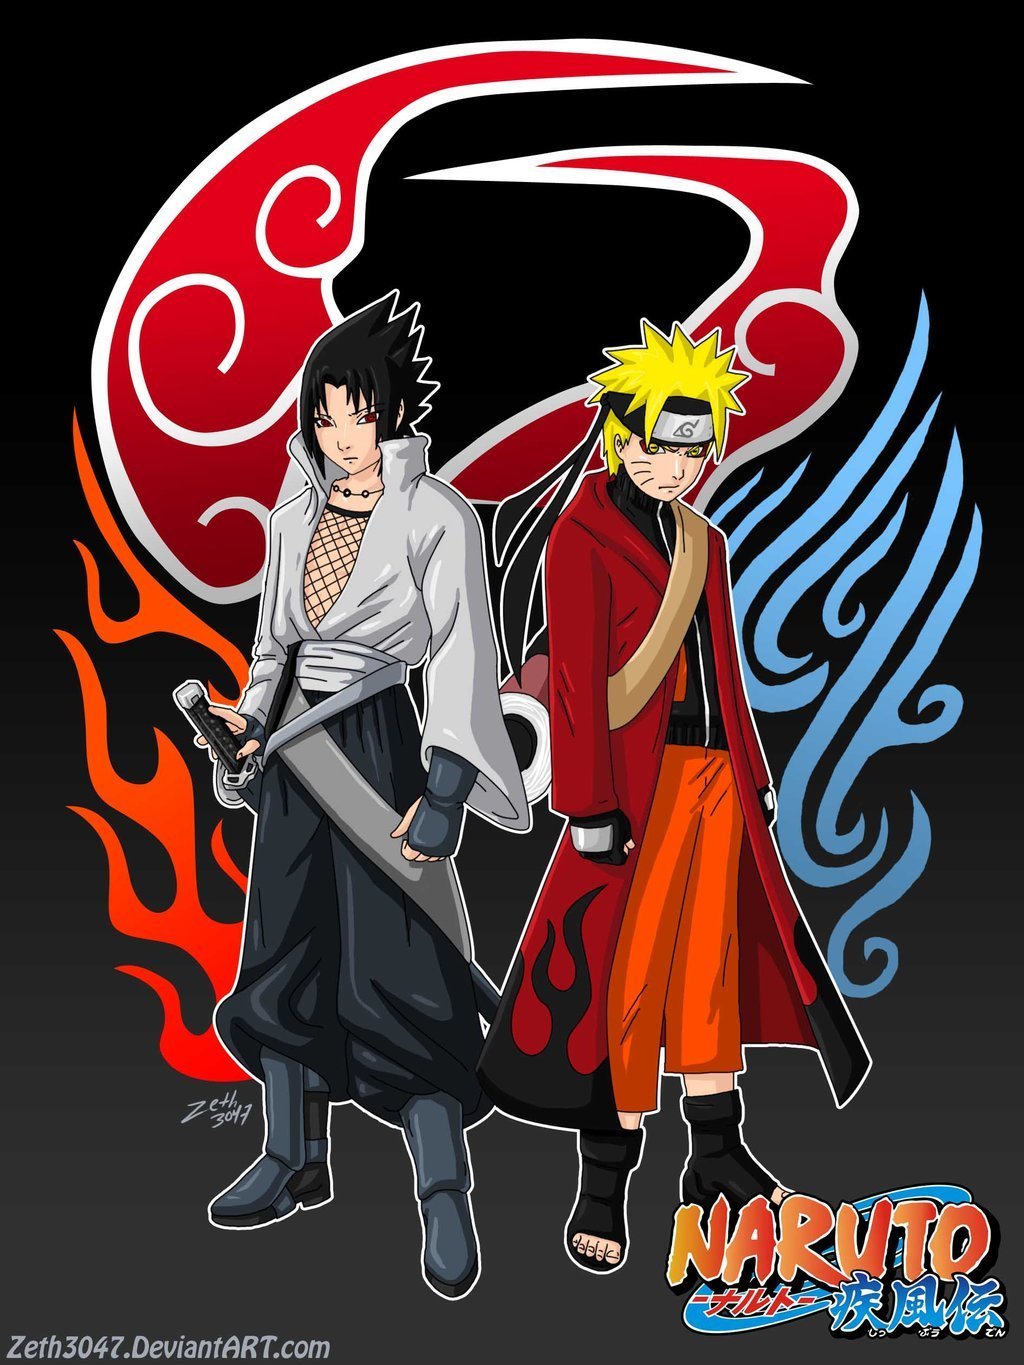 Download Gambar Lucu Naruto Sobat Ngakak